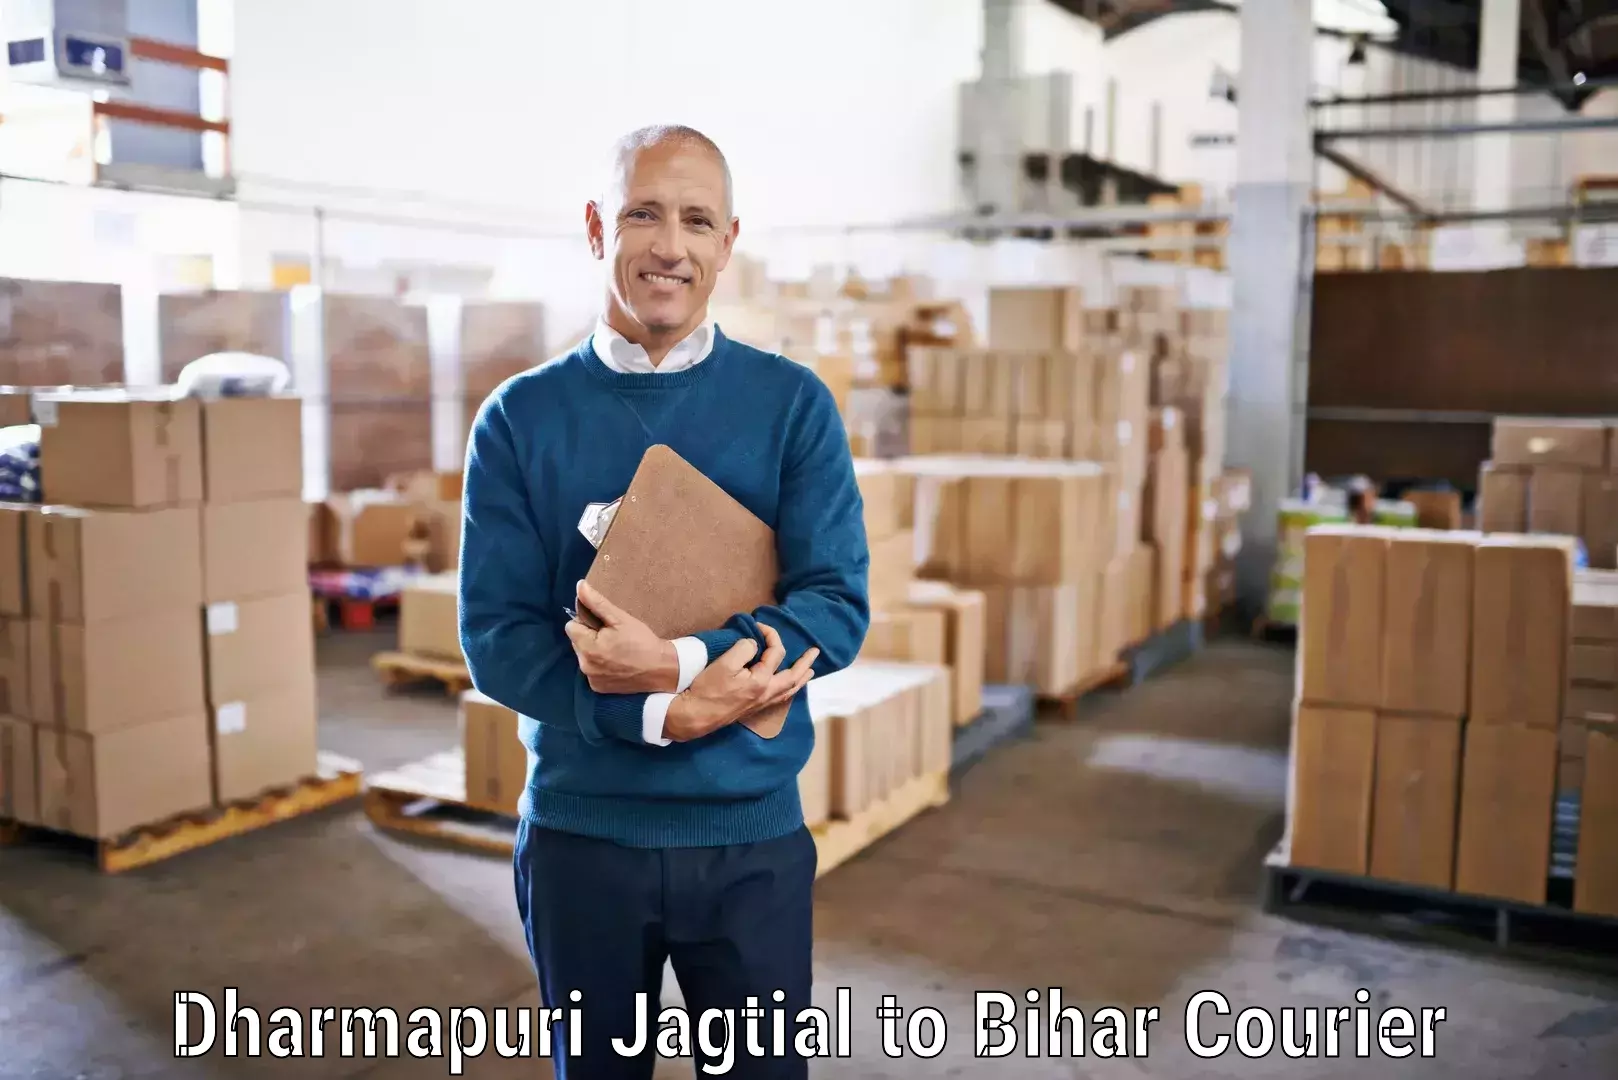 International courier networks Dharmapuri Jagtial to Bihar